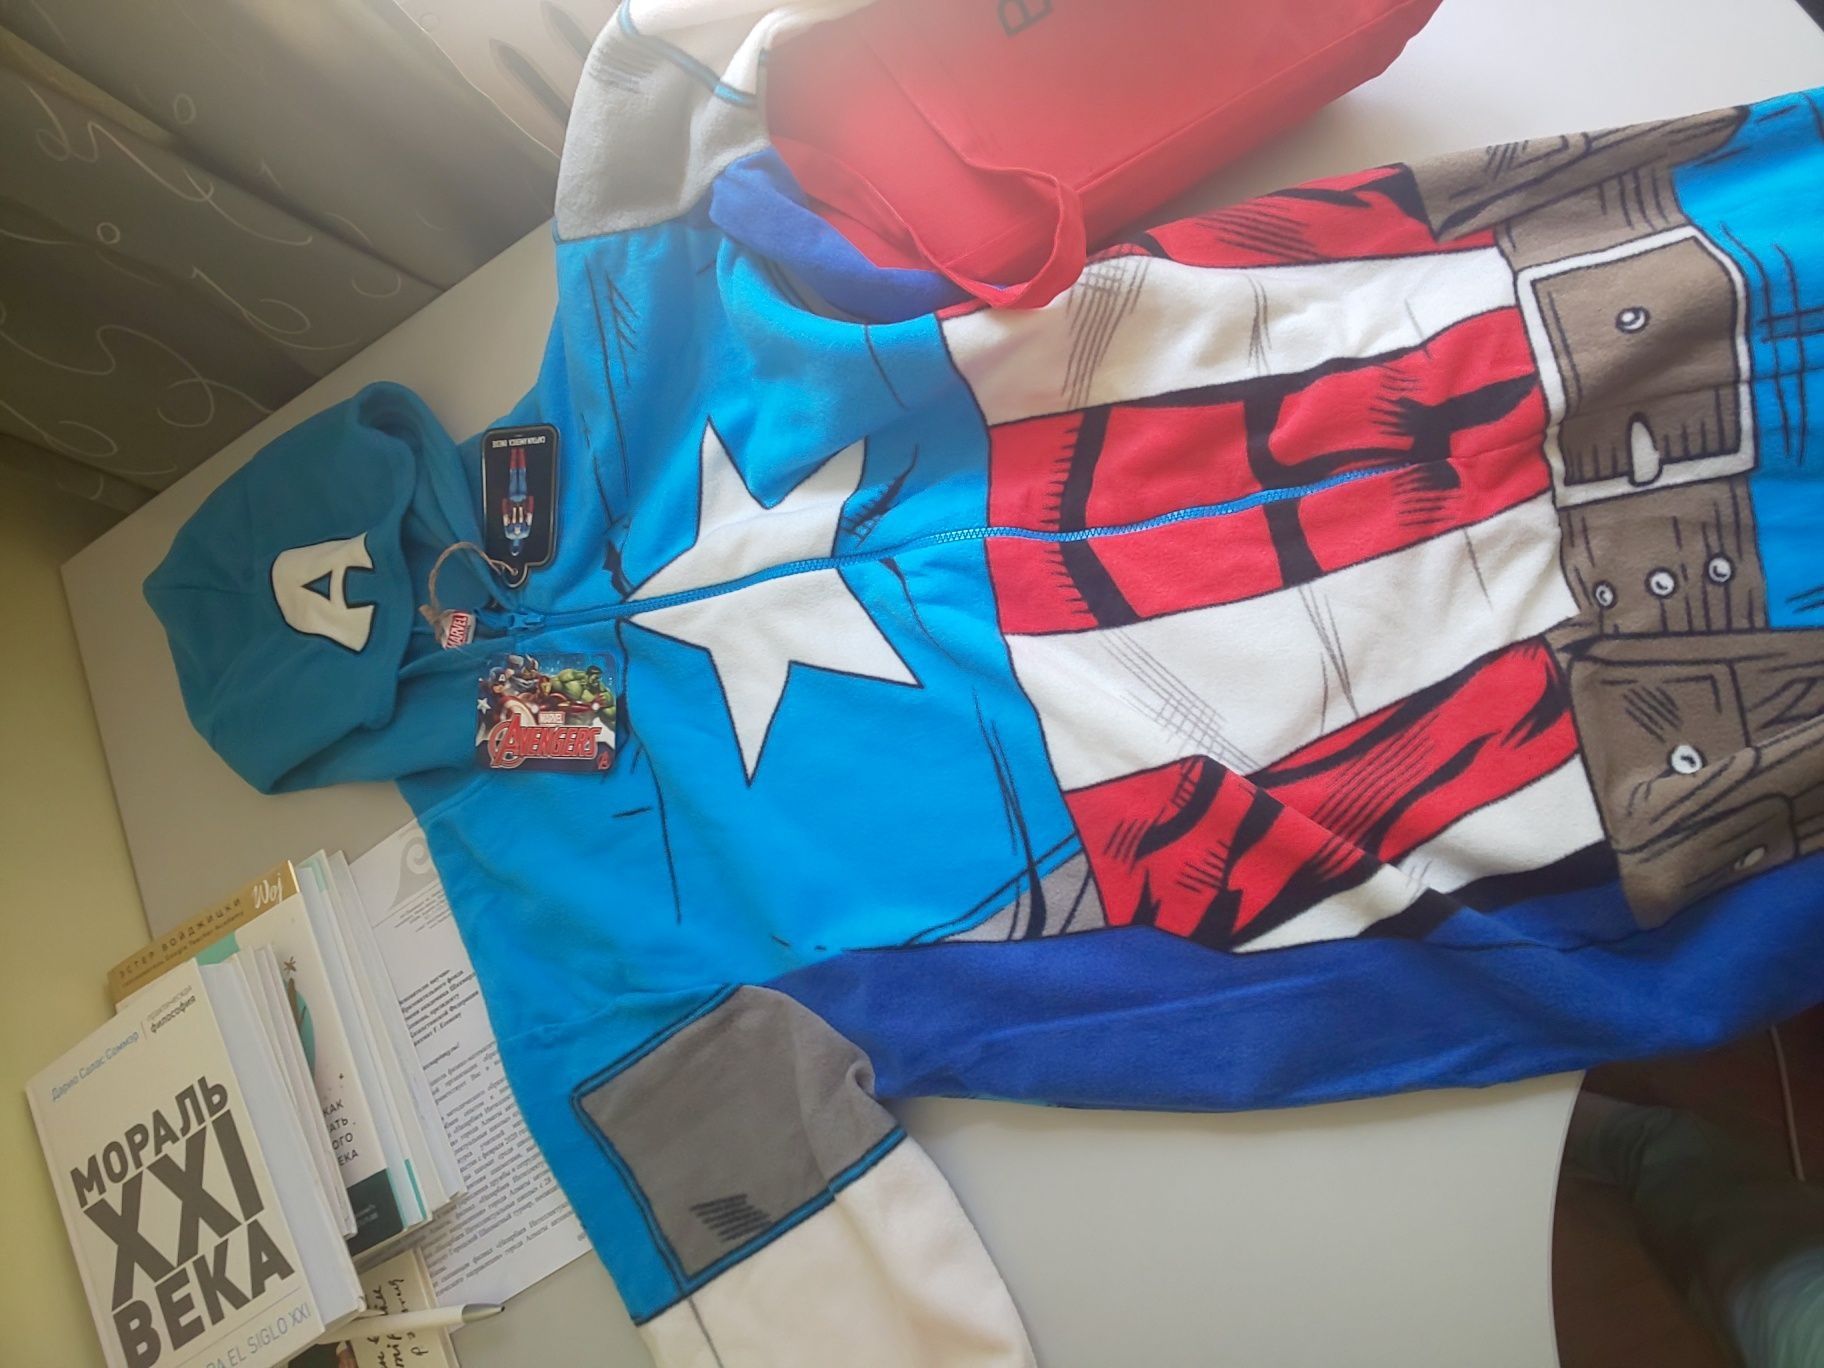 Новая пижама для папы 3D комбинезон Marvel Captain America из Германии